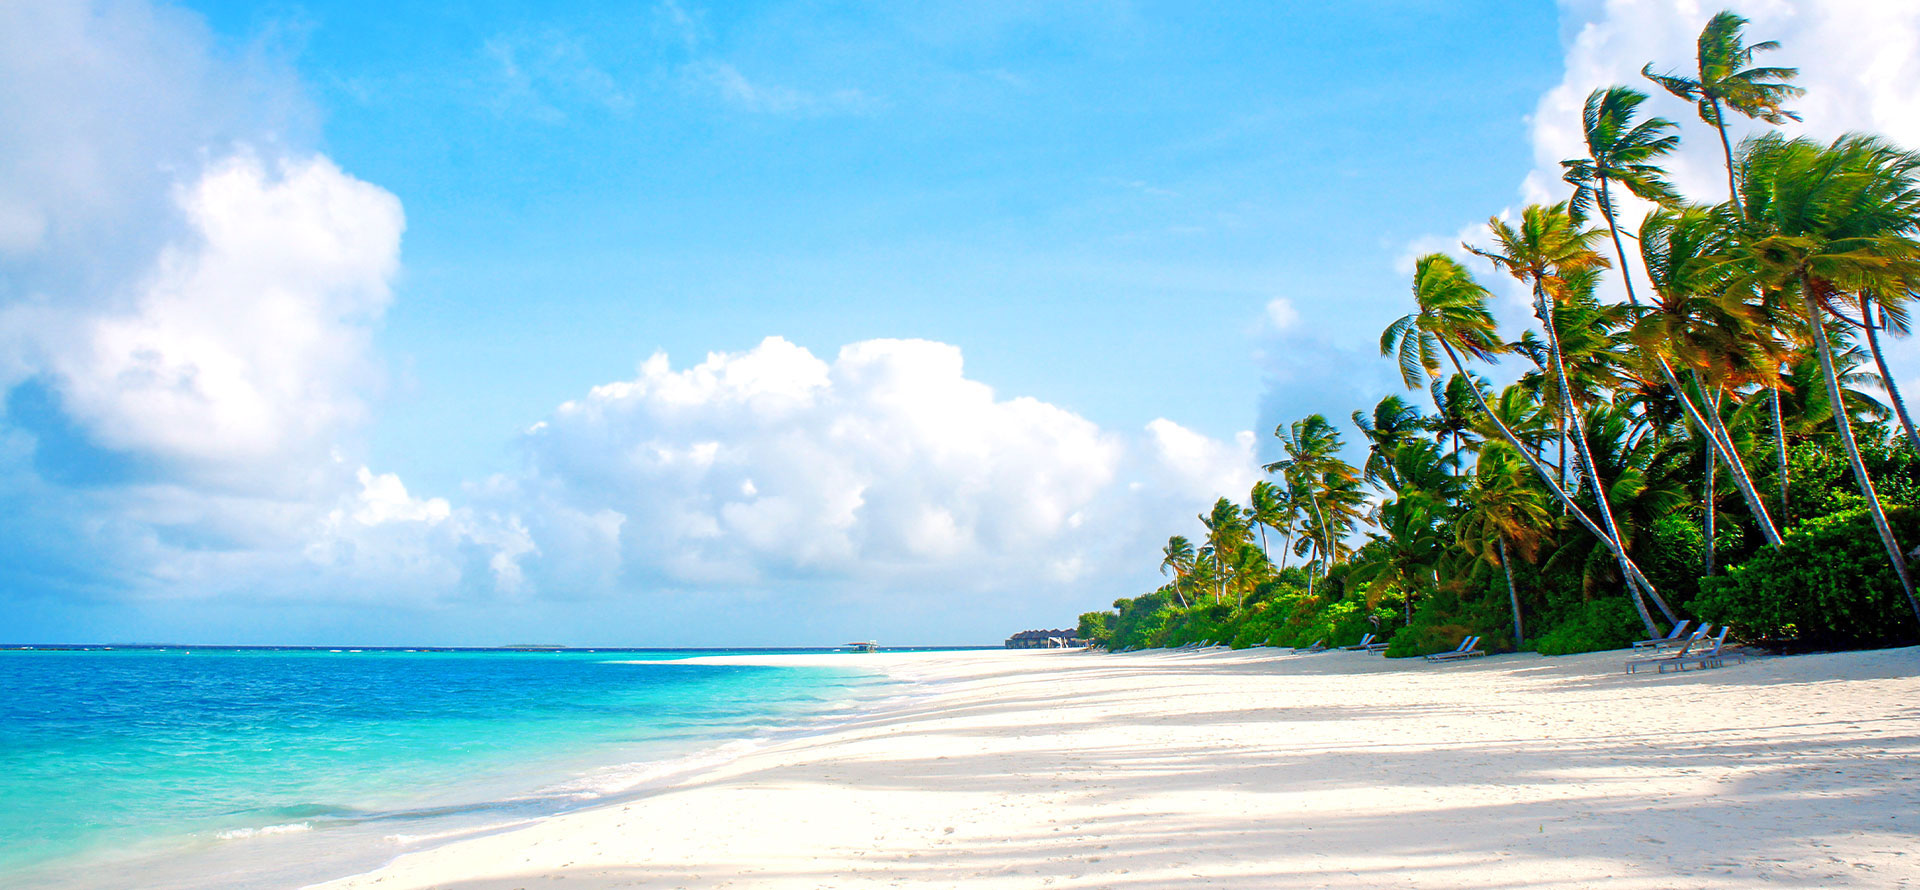 Fiji vs bali beach.